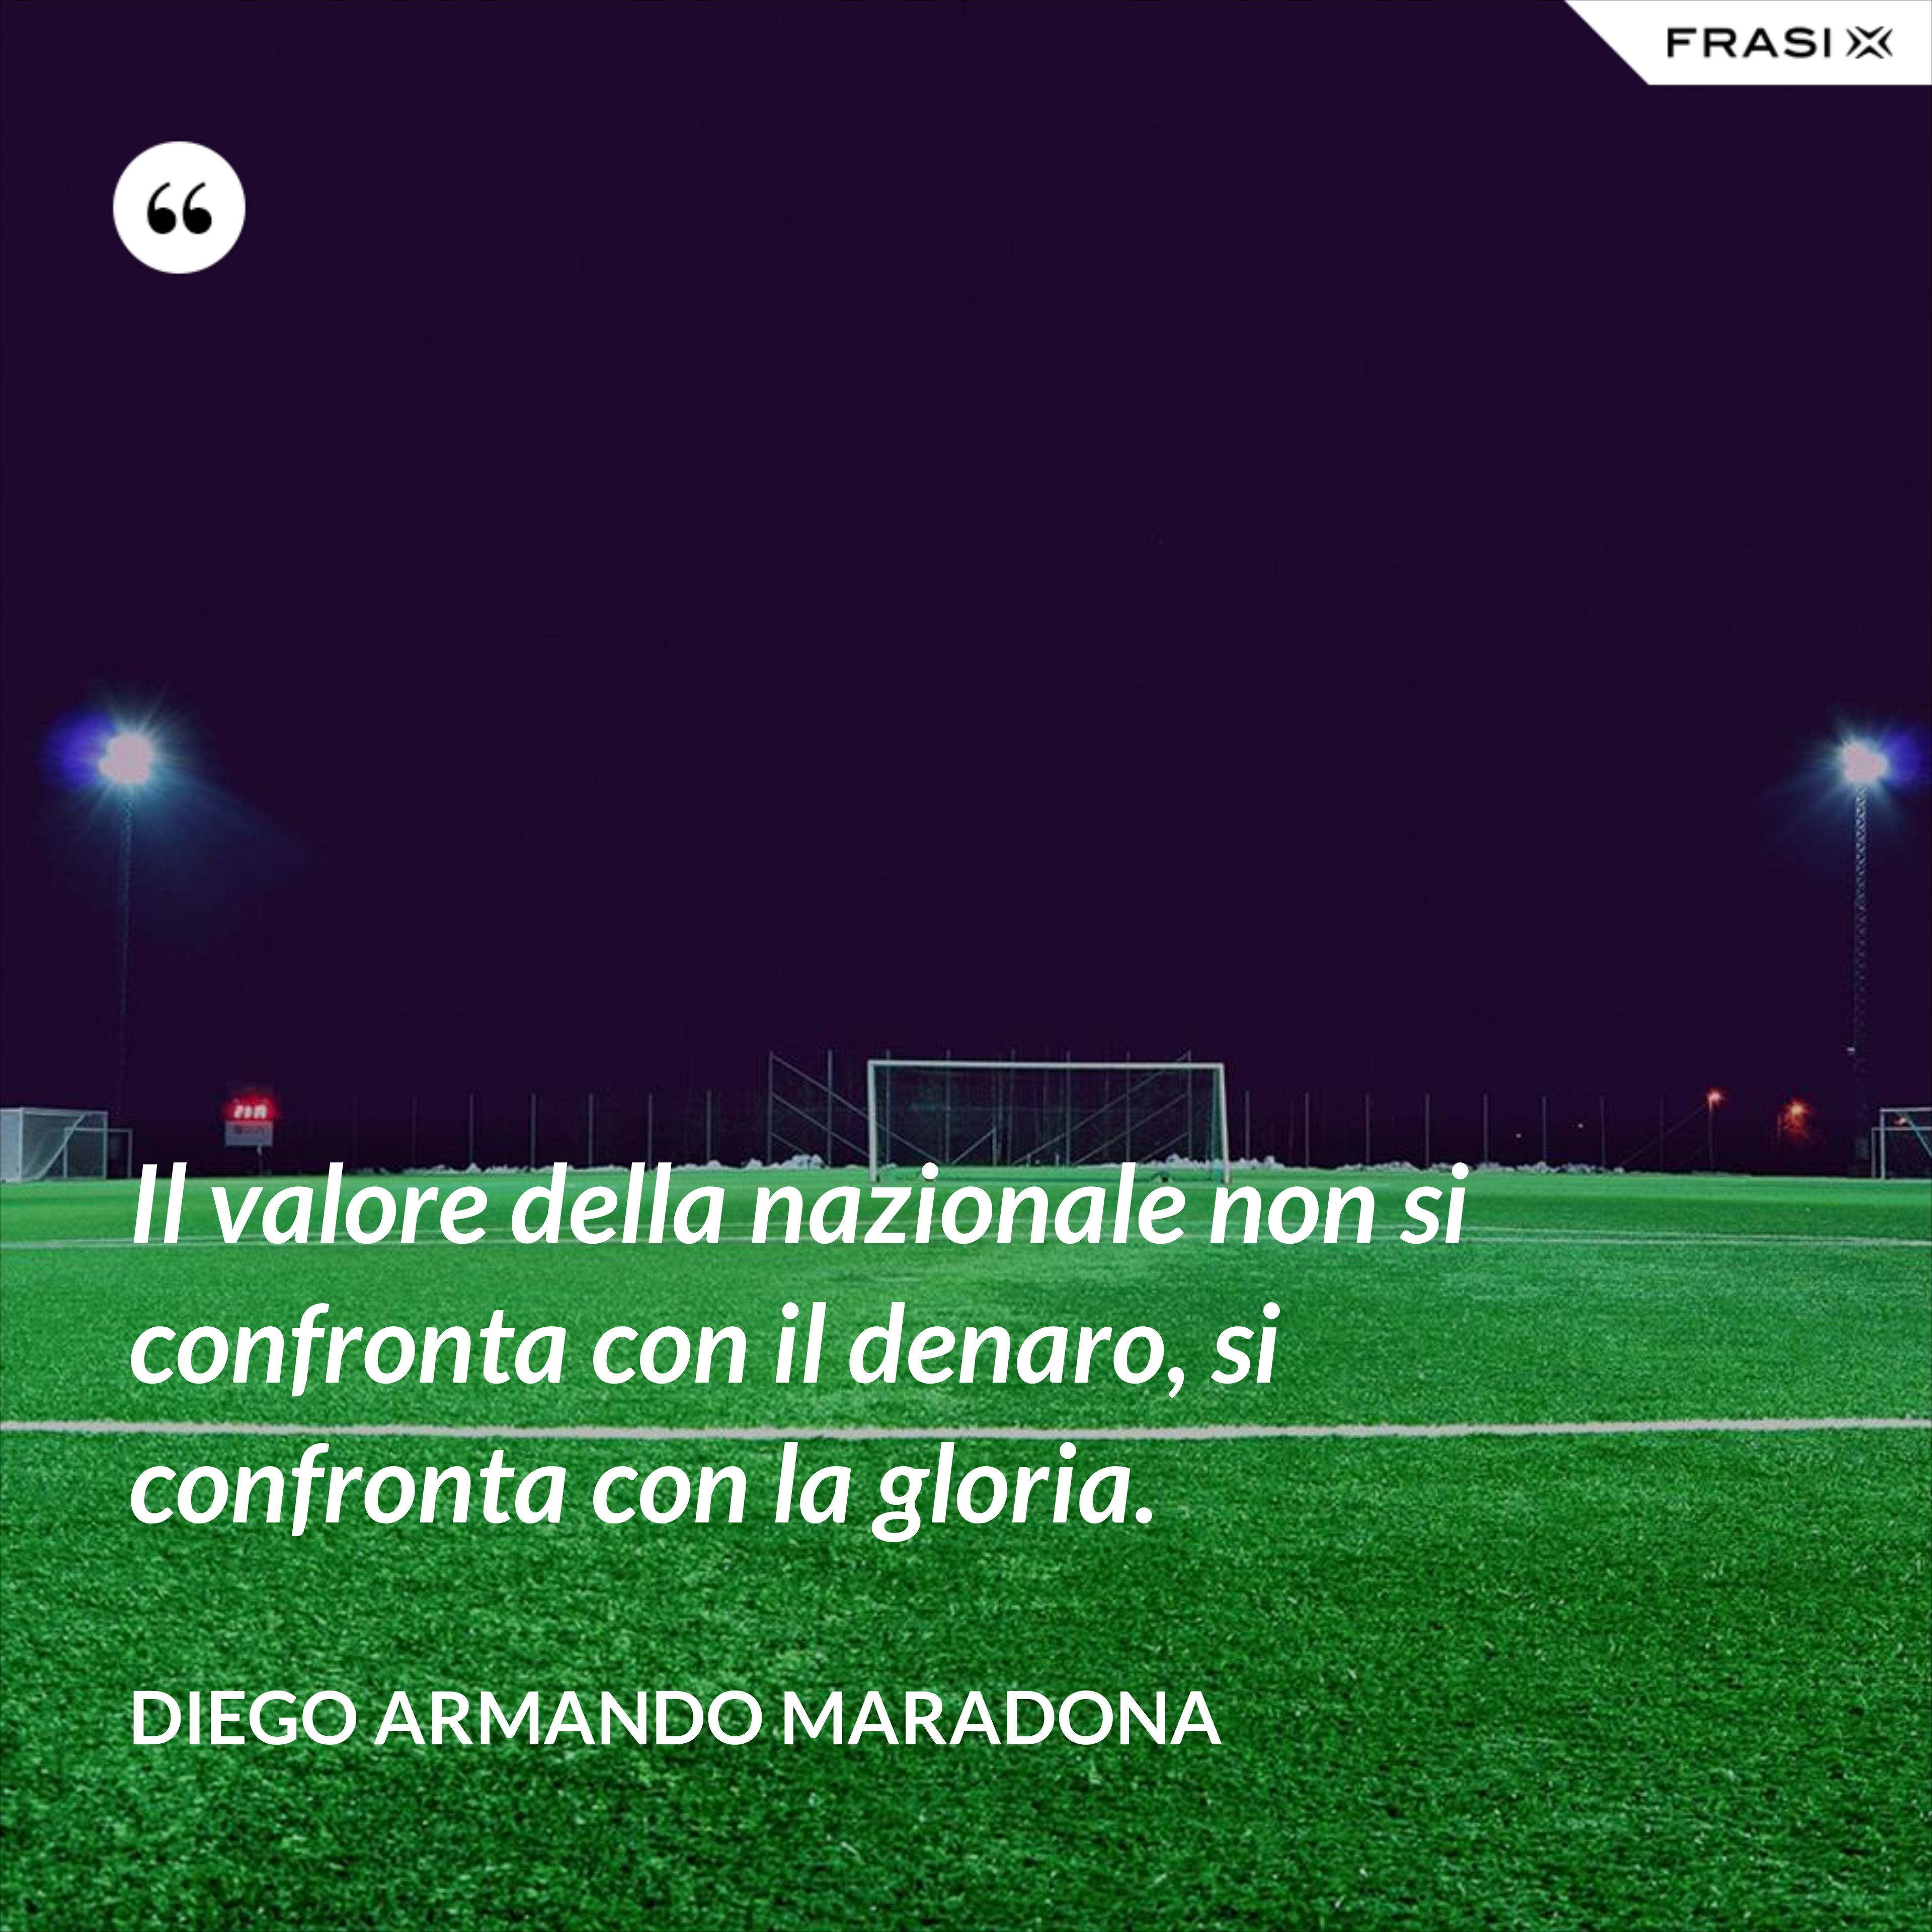 Il valore della nazionale non si confronta con il denaro, si confronta con la gloria. - Diego Armando Maradona